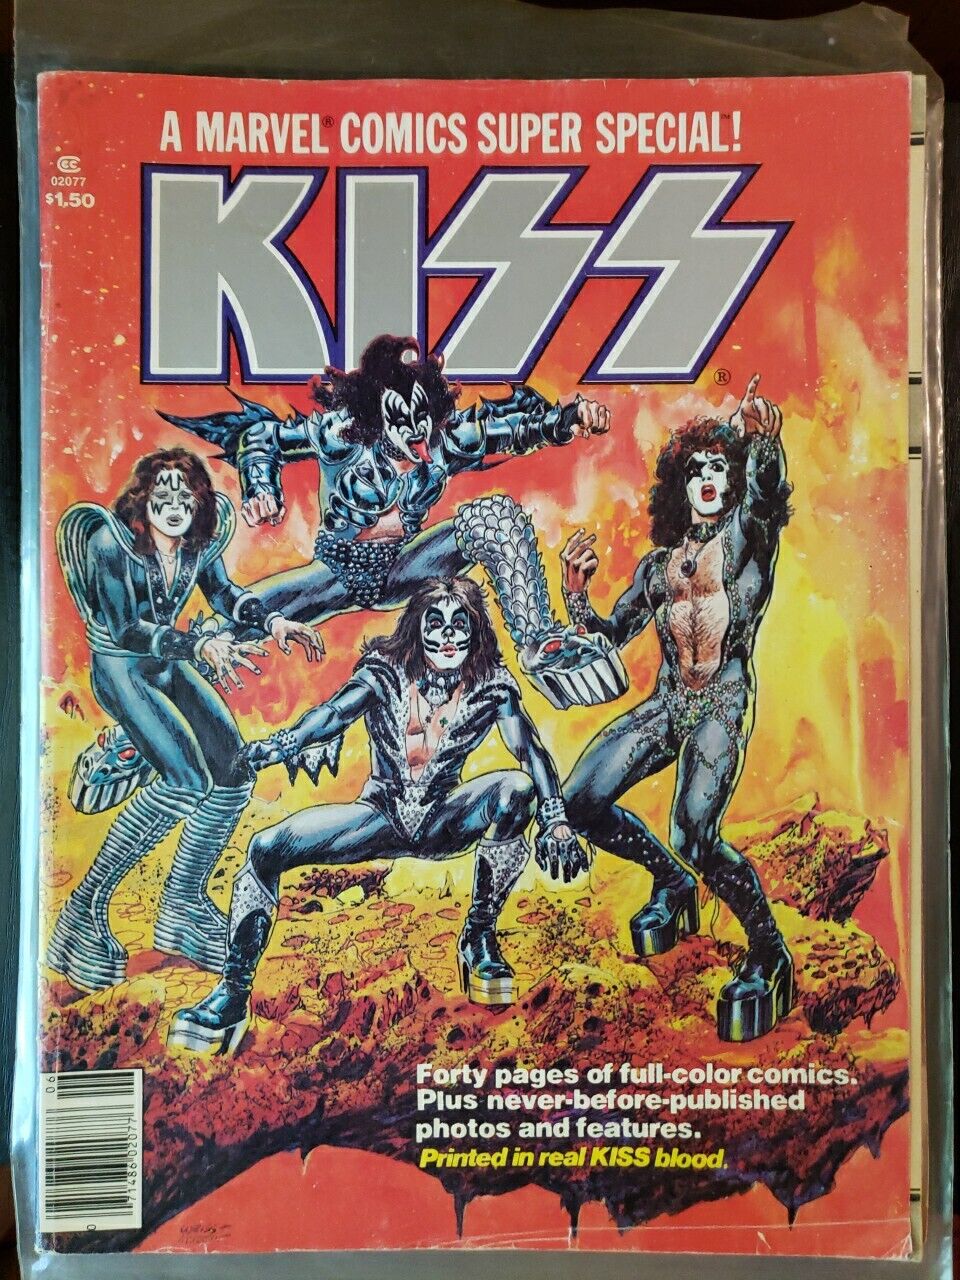 1977 KISS A MARVEL COMICS SUPER SPECIAL VOL-1 #-1 COMIC BOOK